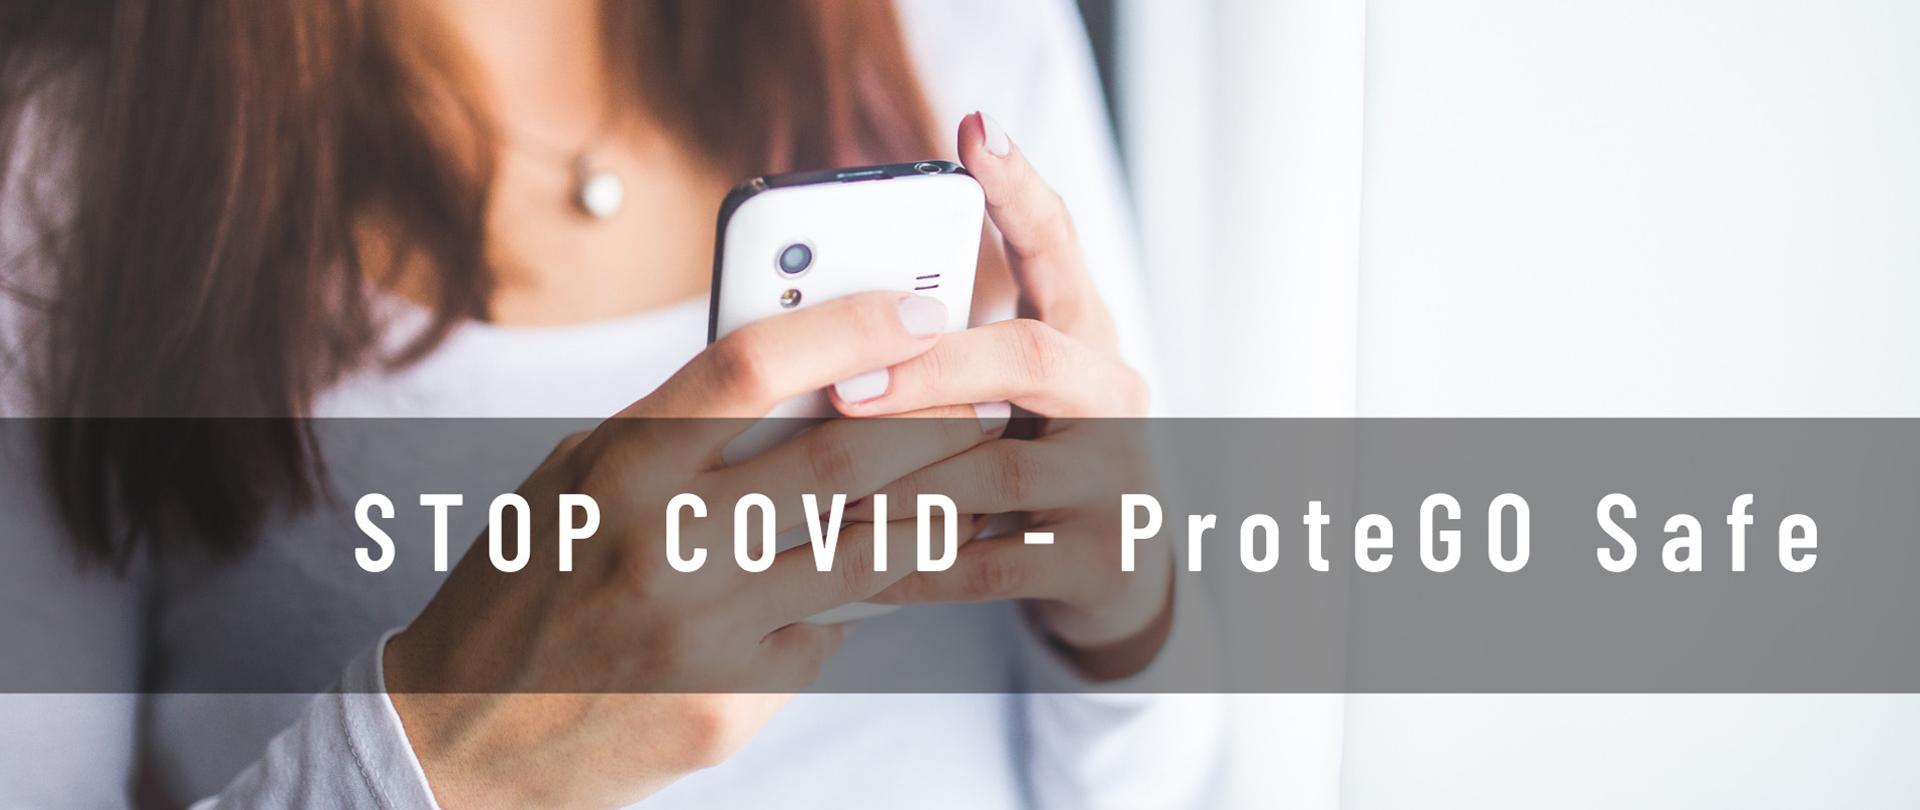 Zdjęcie to baner reklamowy STOP COVID ProteGO Safe przedstawiający kobietę trzymającą smartfon